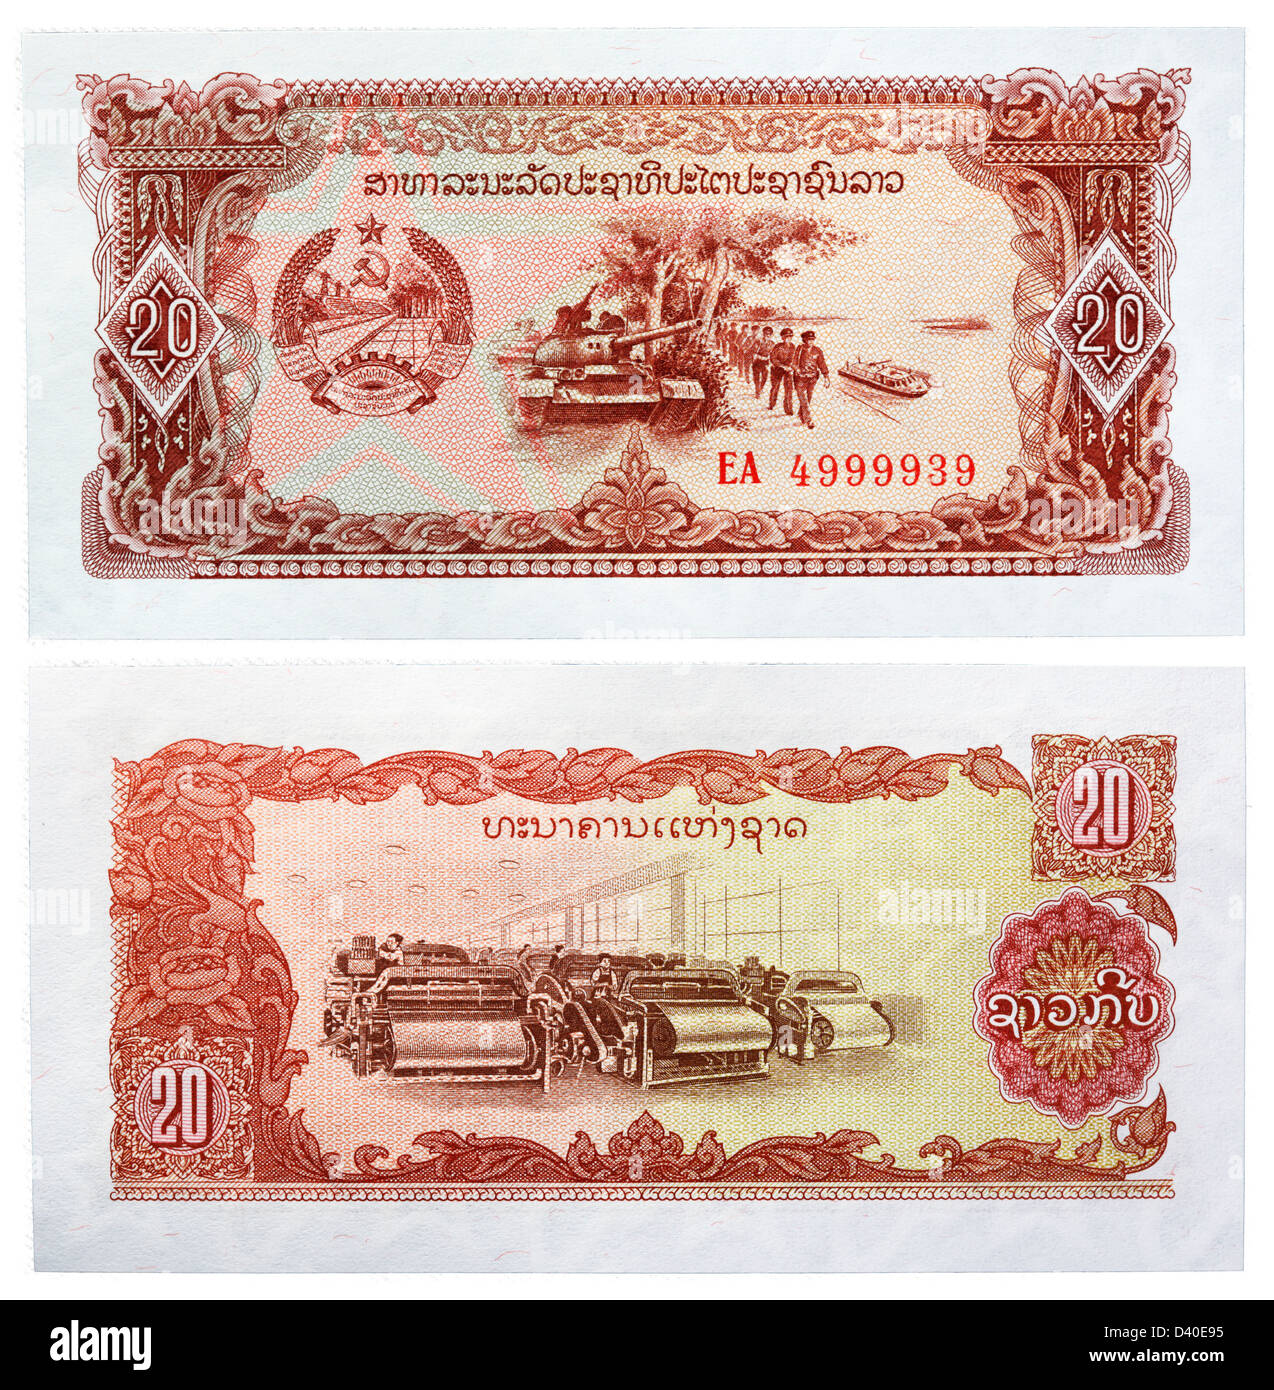 20 billet de Kip, réservoir, soldats et l'usine de textile, Laos, 1979 Banque D'Images